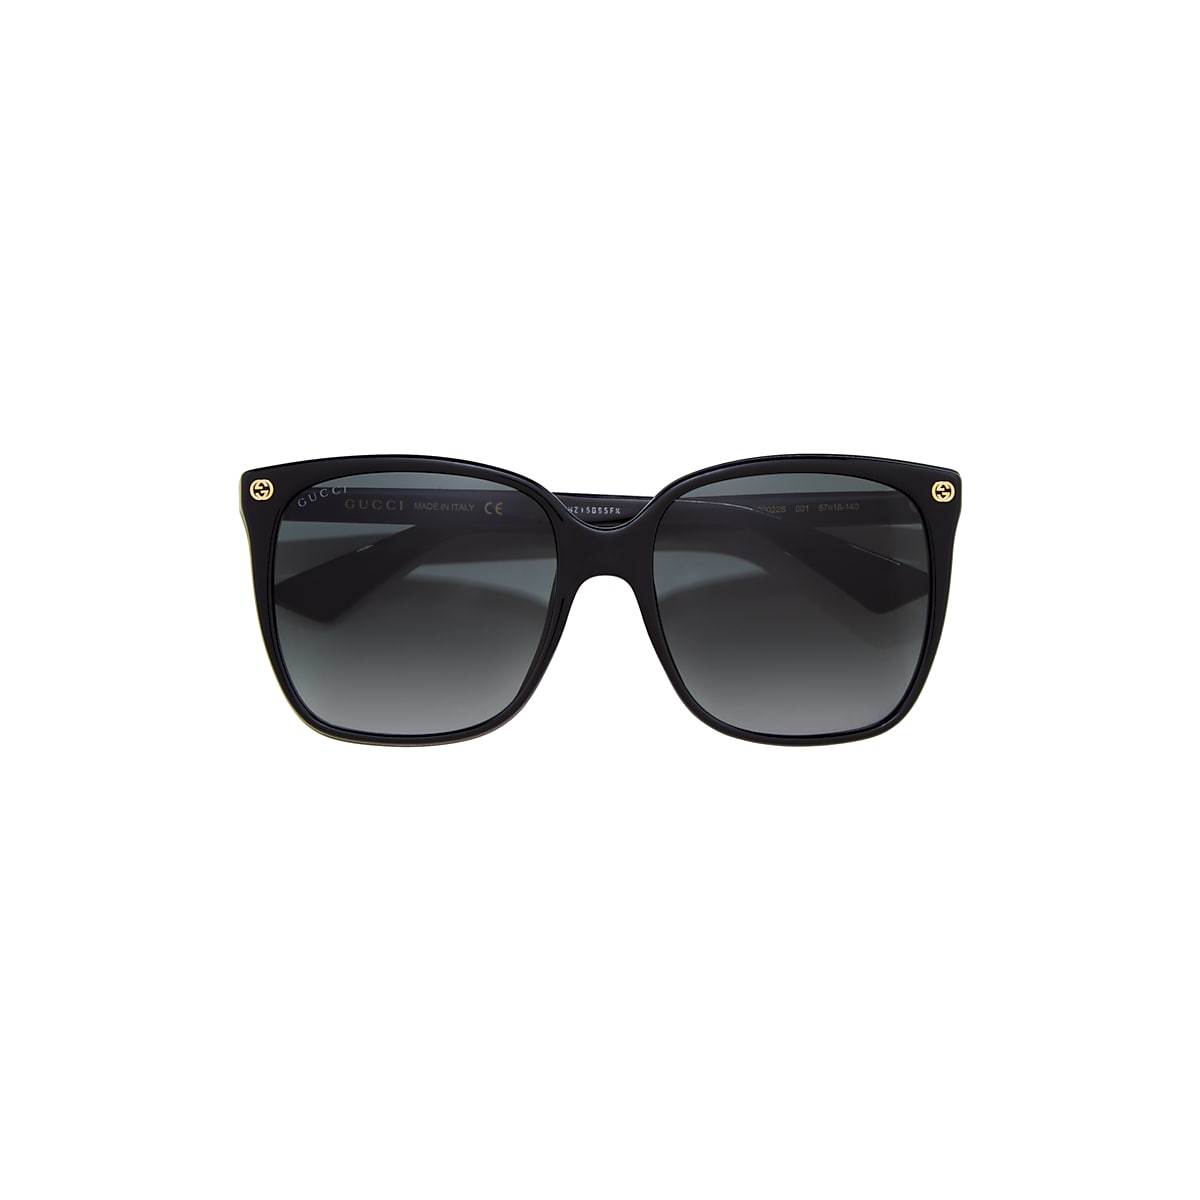 Moeras Napier besluiten Gucci GG0022S 57 Grey & Black Sunglasses | Sunglass Hut USA